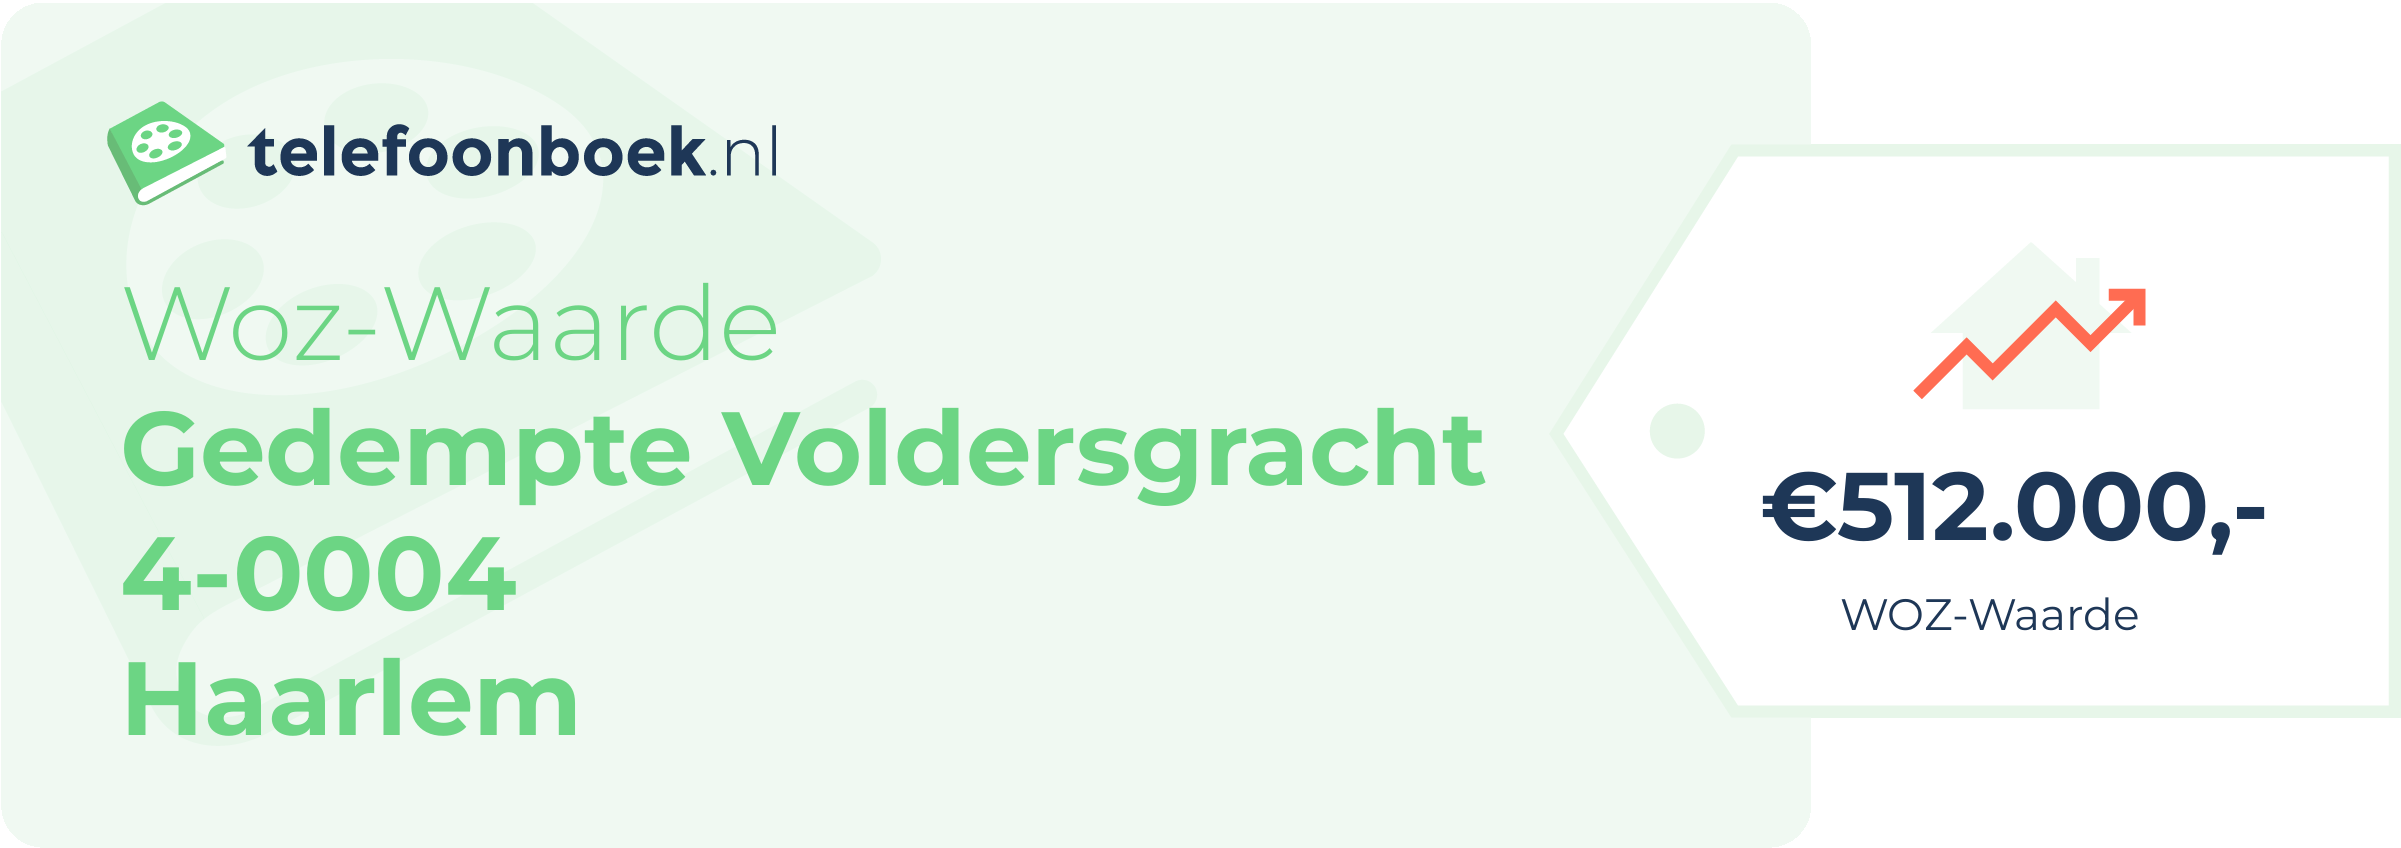 WOZ-waarde Gedempte Voldersgracht 4-0004 Haarlem